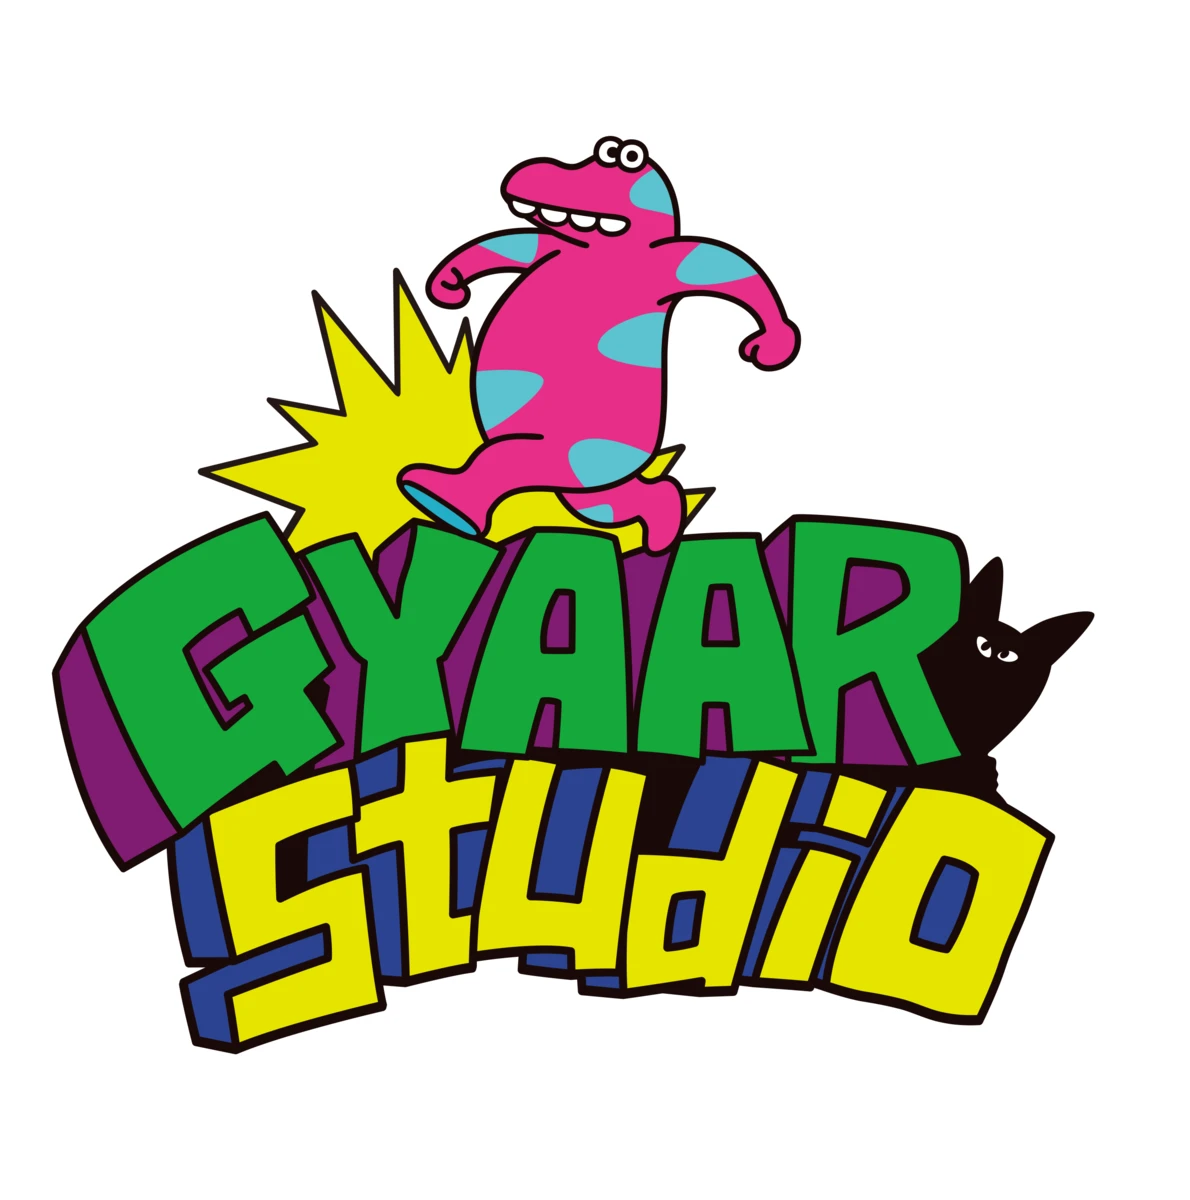 バンダイナムコスタジオ、インディーゲームレーベル「GYAAR Studio」設立